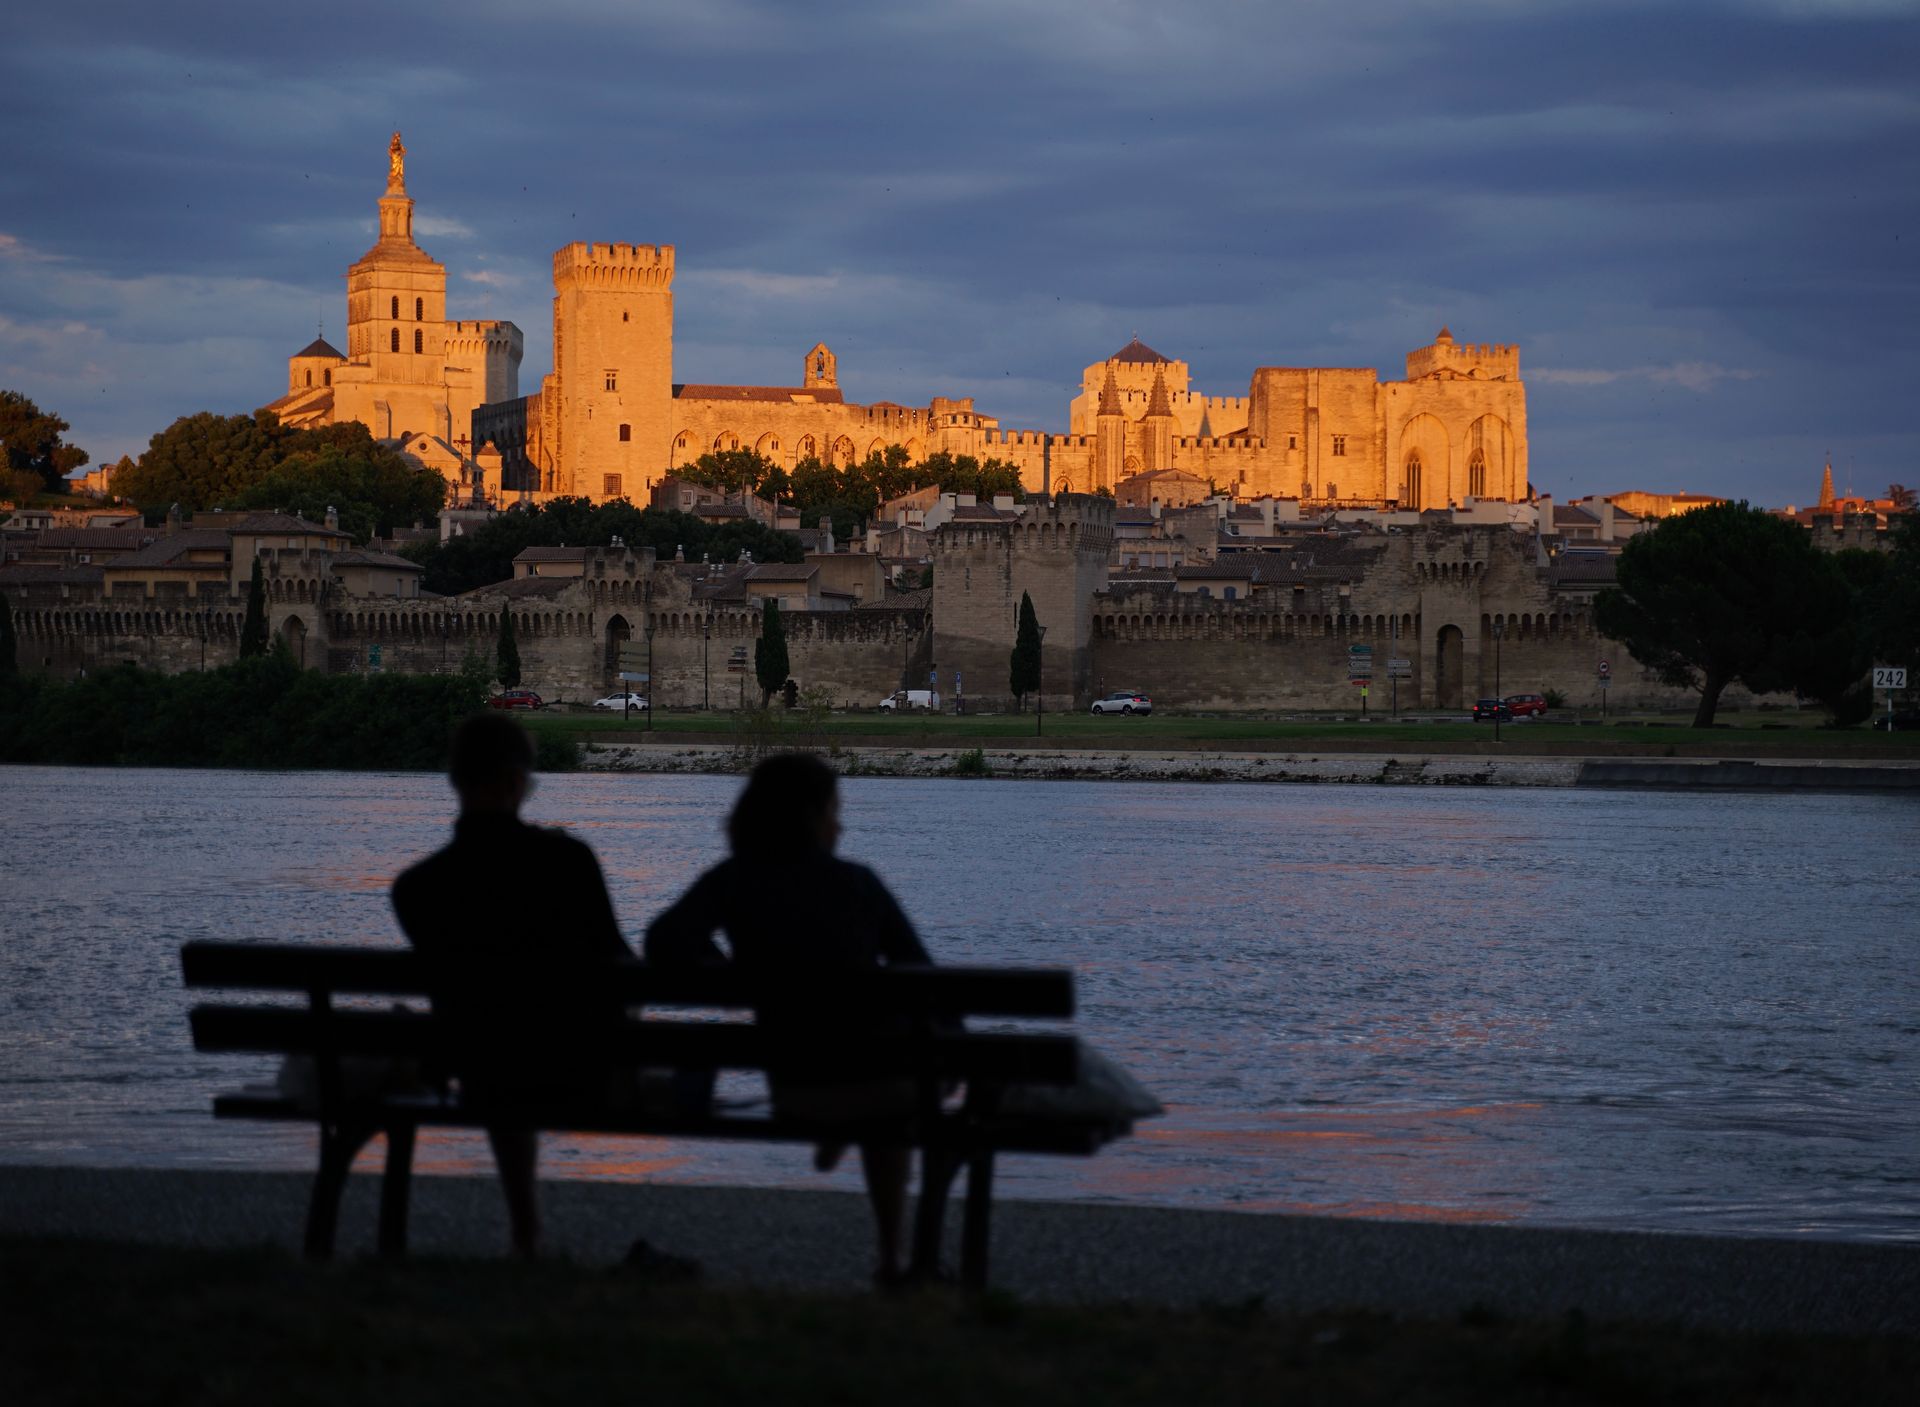 Avignon's Illuminated Landmarks